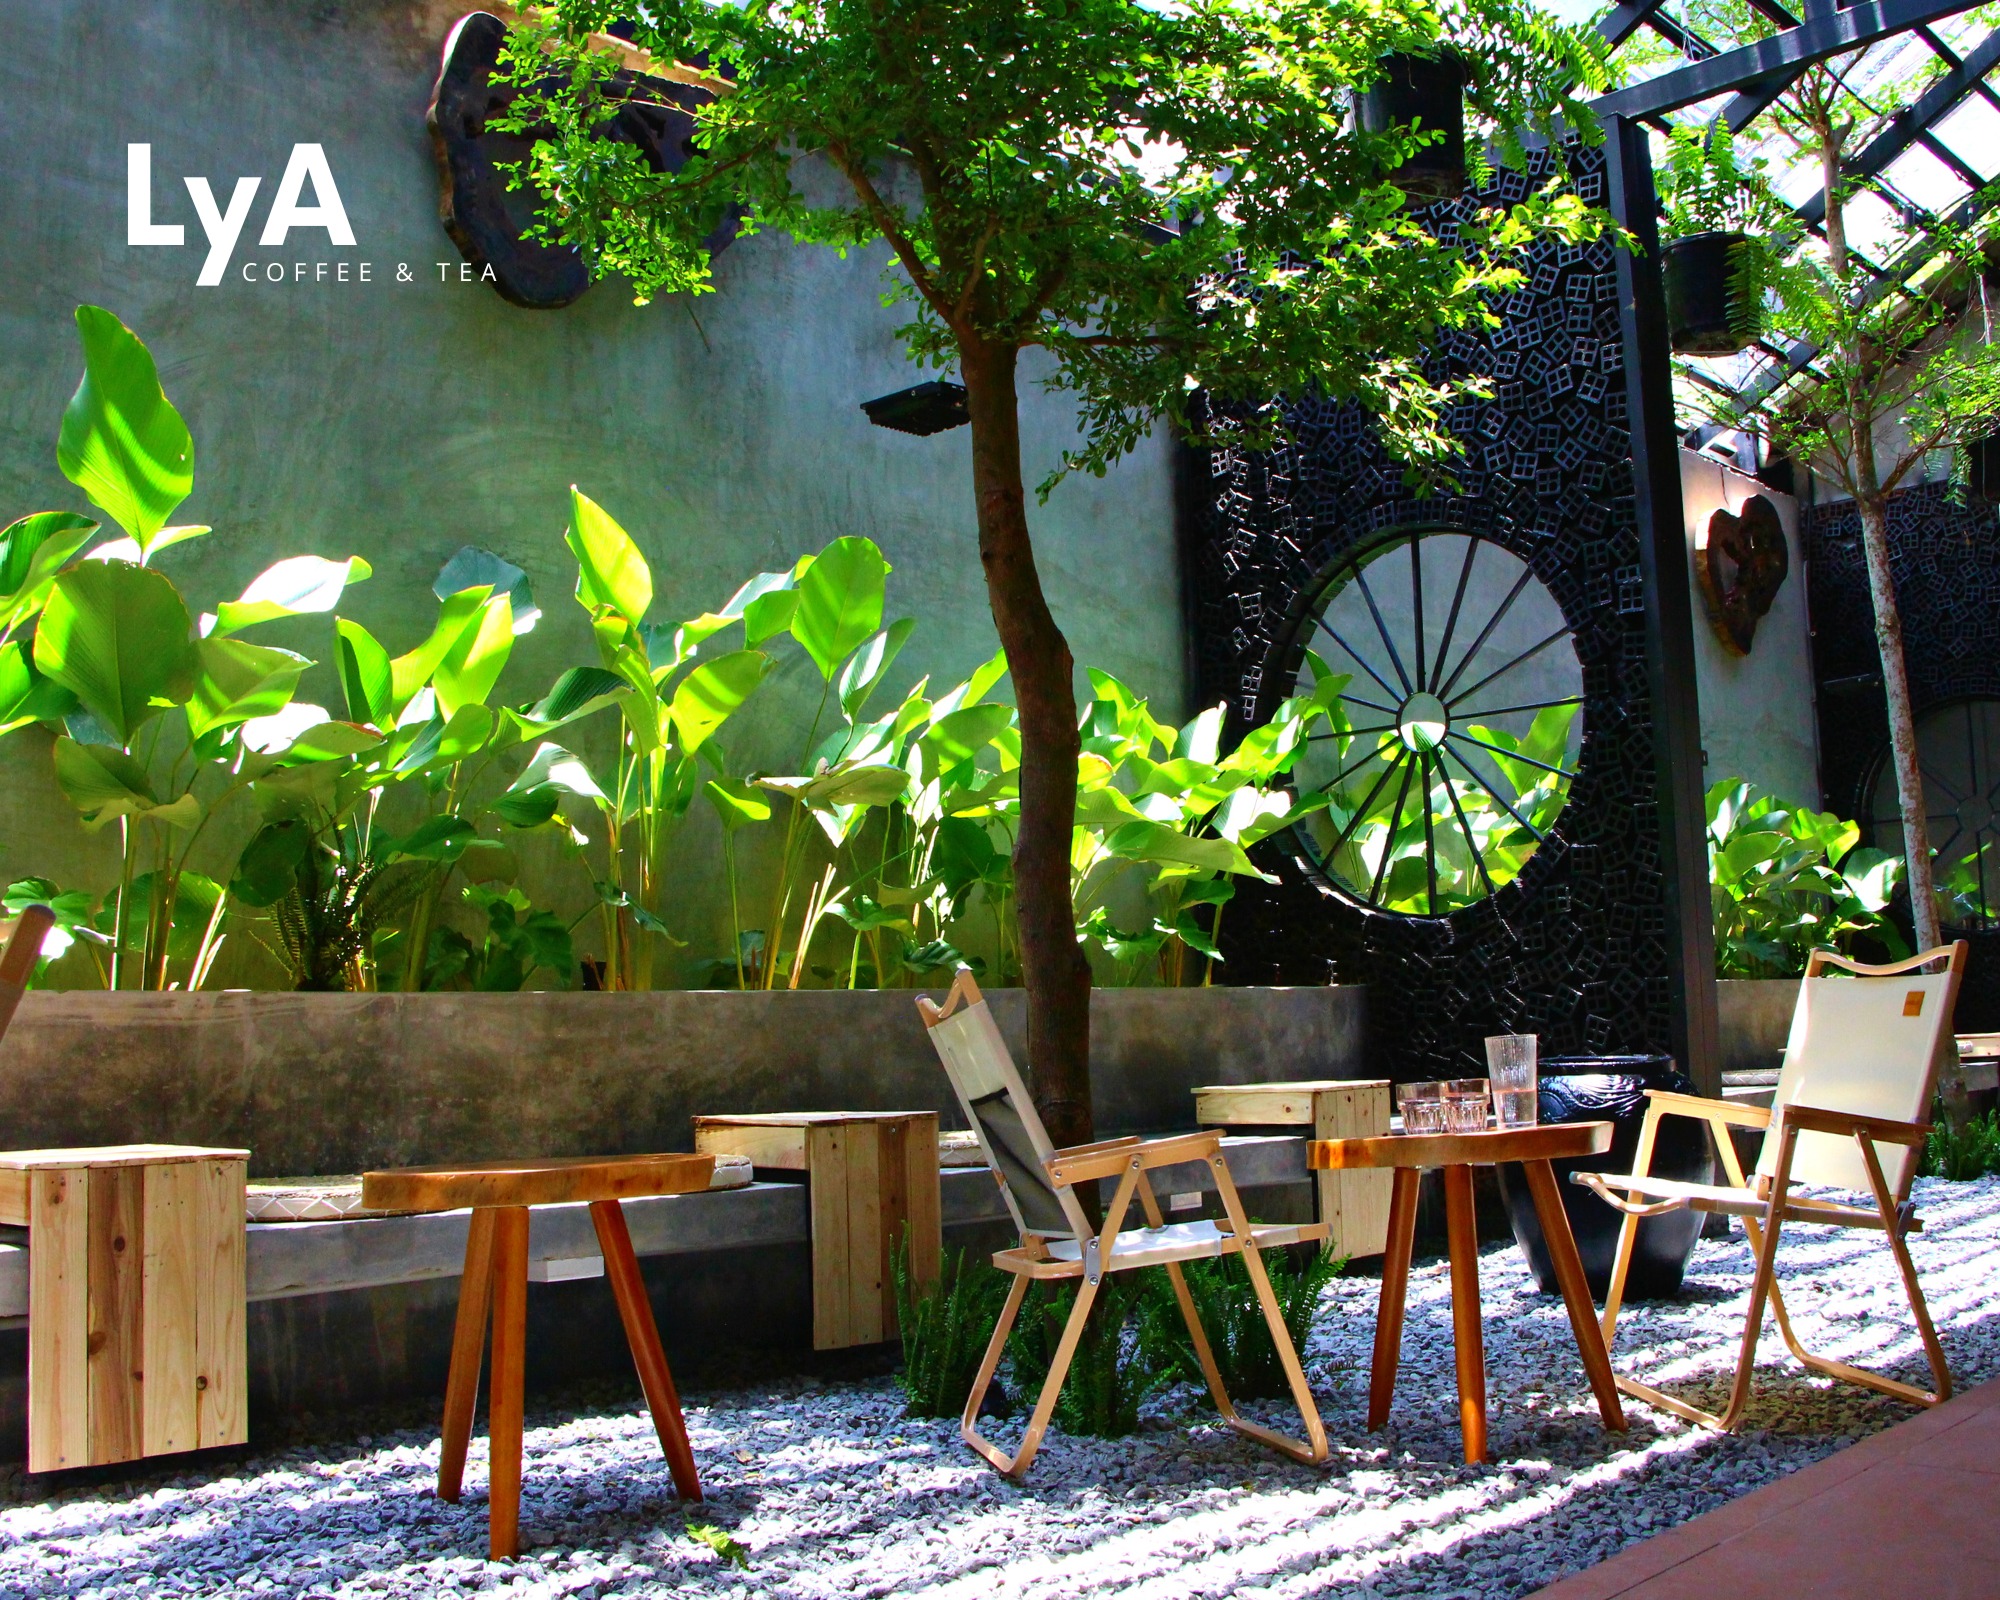 LyA Coffee có chỗ ngồi thoải mái.